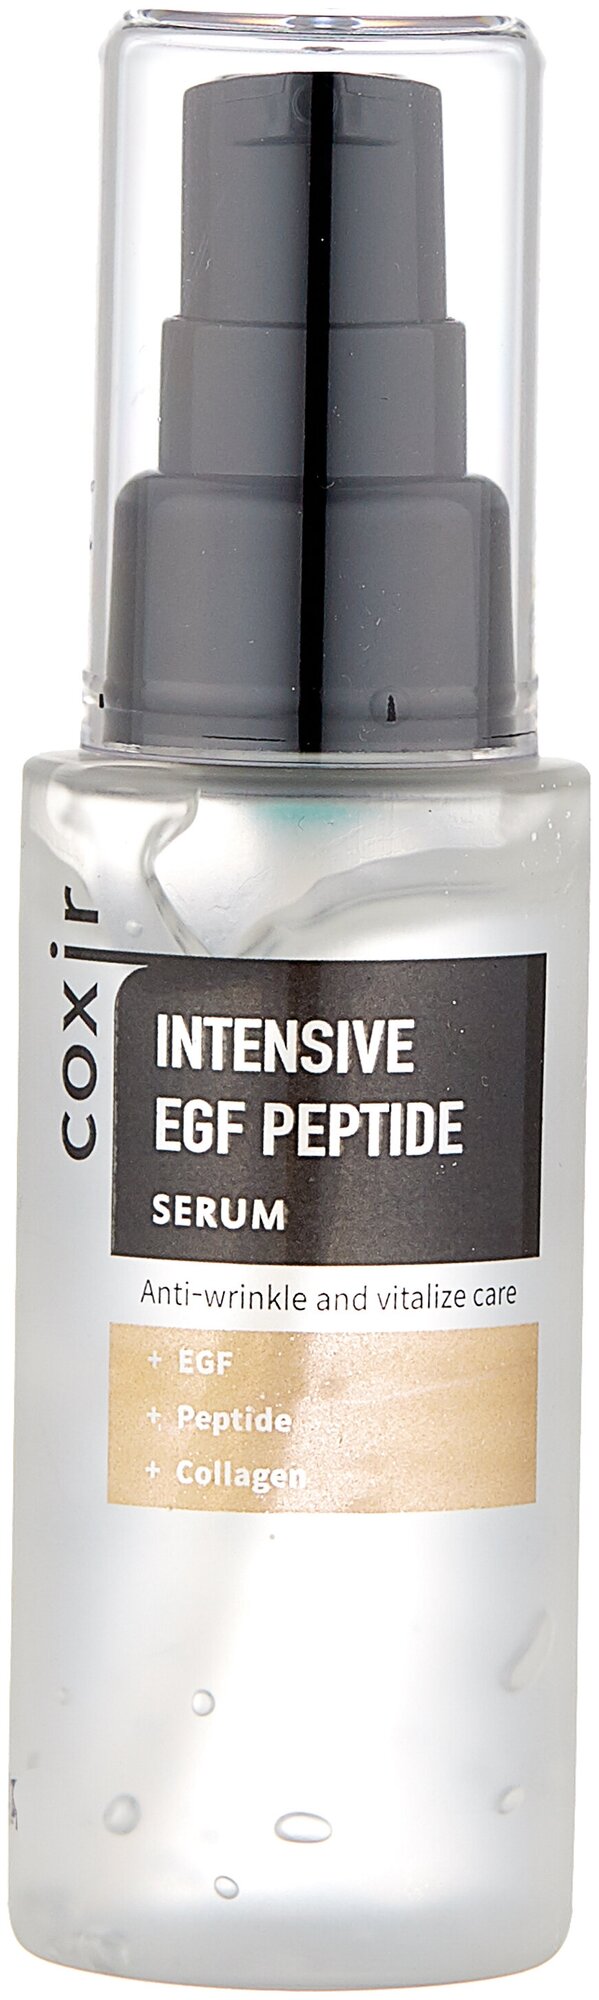 Сыворотка Coxir для лица с пептидами Intensive EGF Peptide Serum 50мл